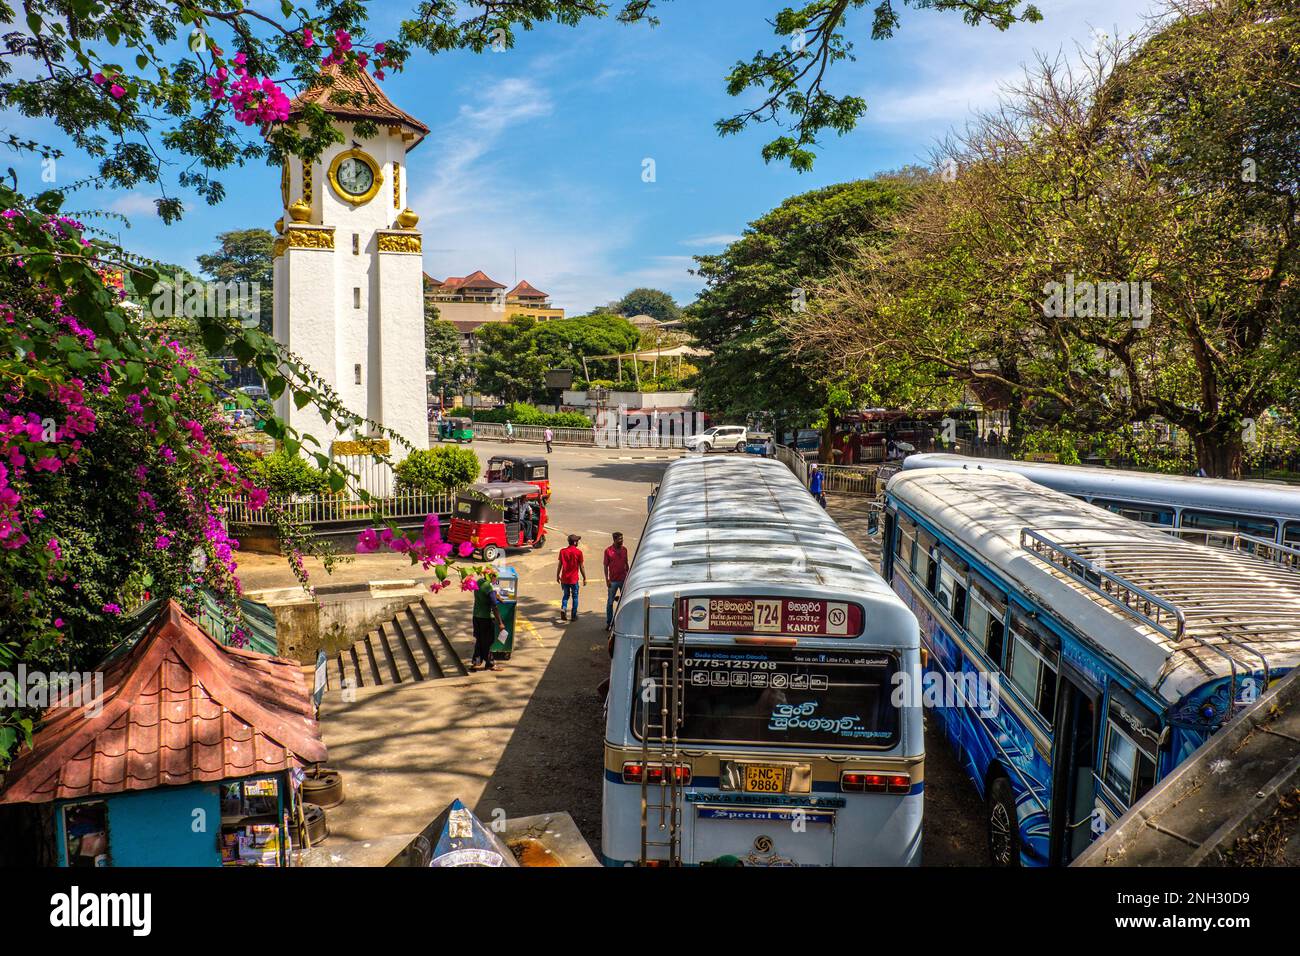 La station de bus à tour d'horloge dans le centre de Kandy, dans le pays de la colline du Sri Lanka Banque D'Images